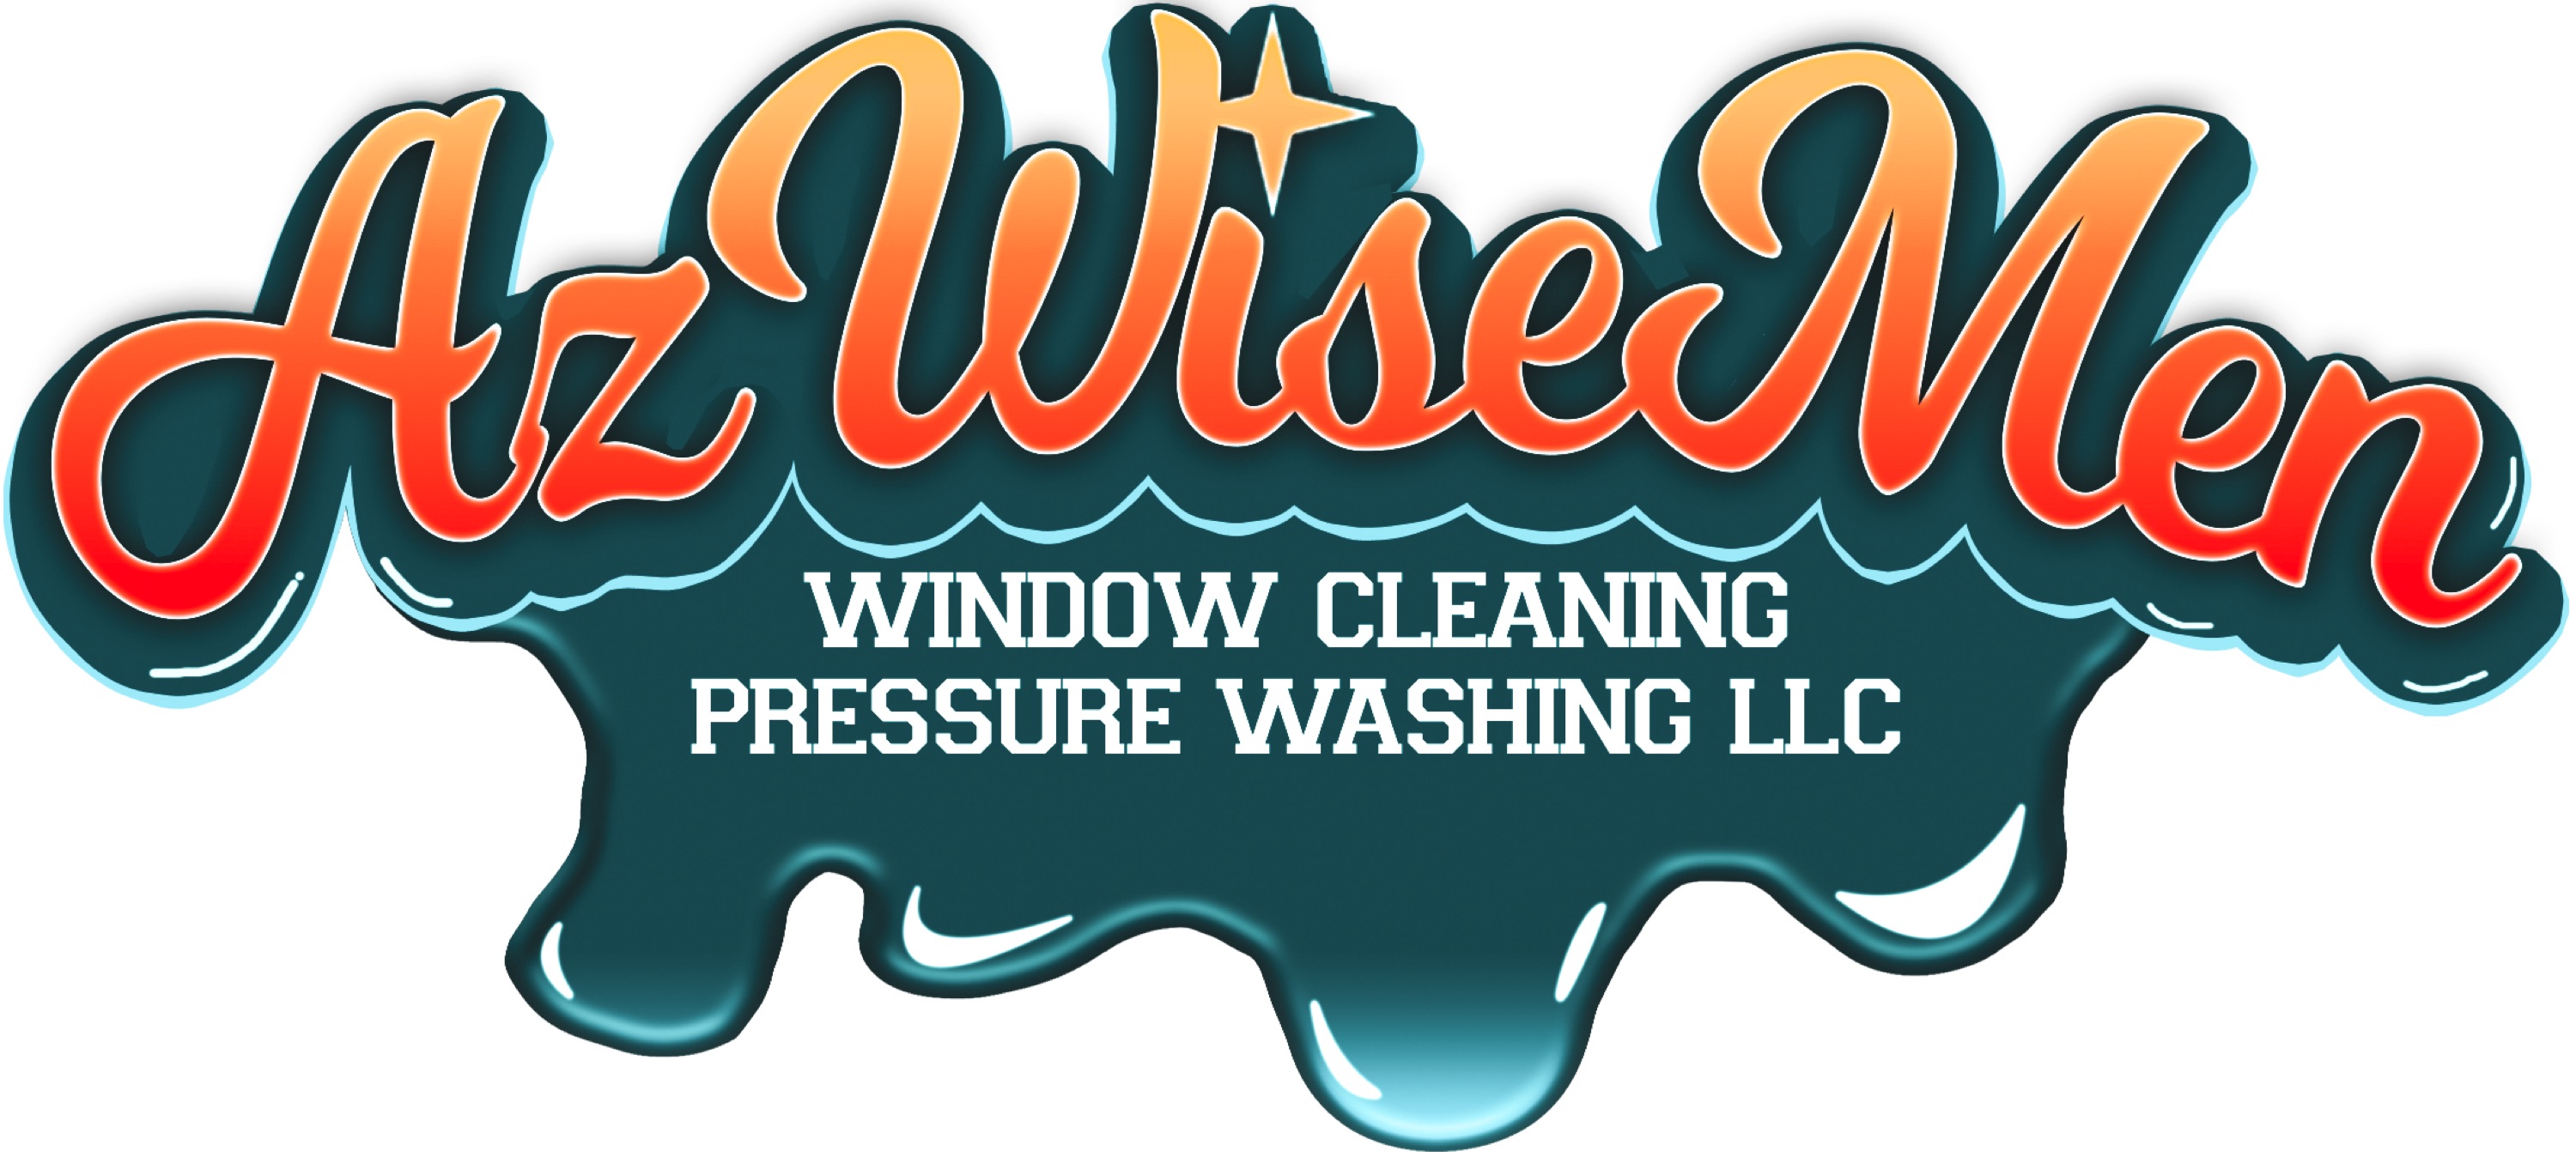 AZ WiseMen, LLC Logo